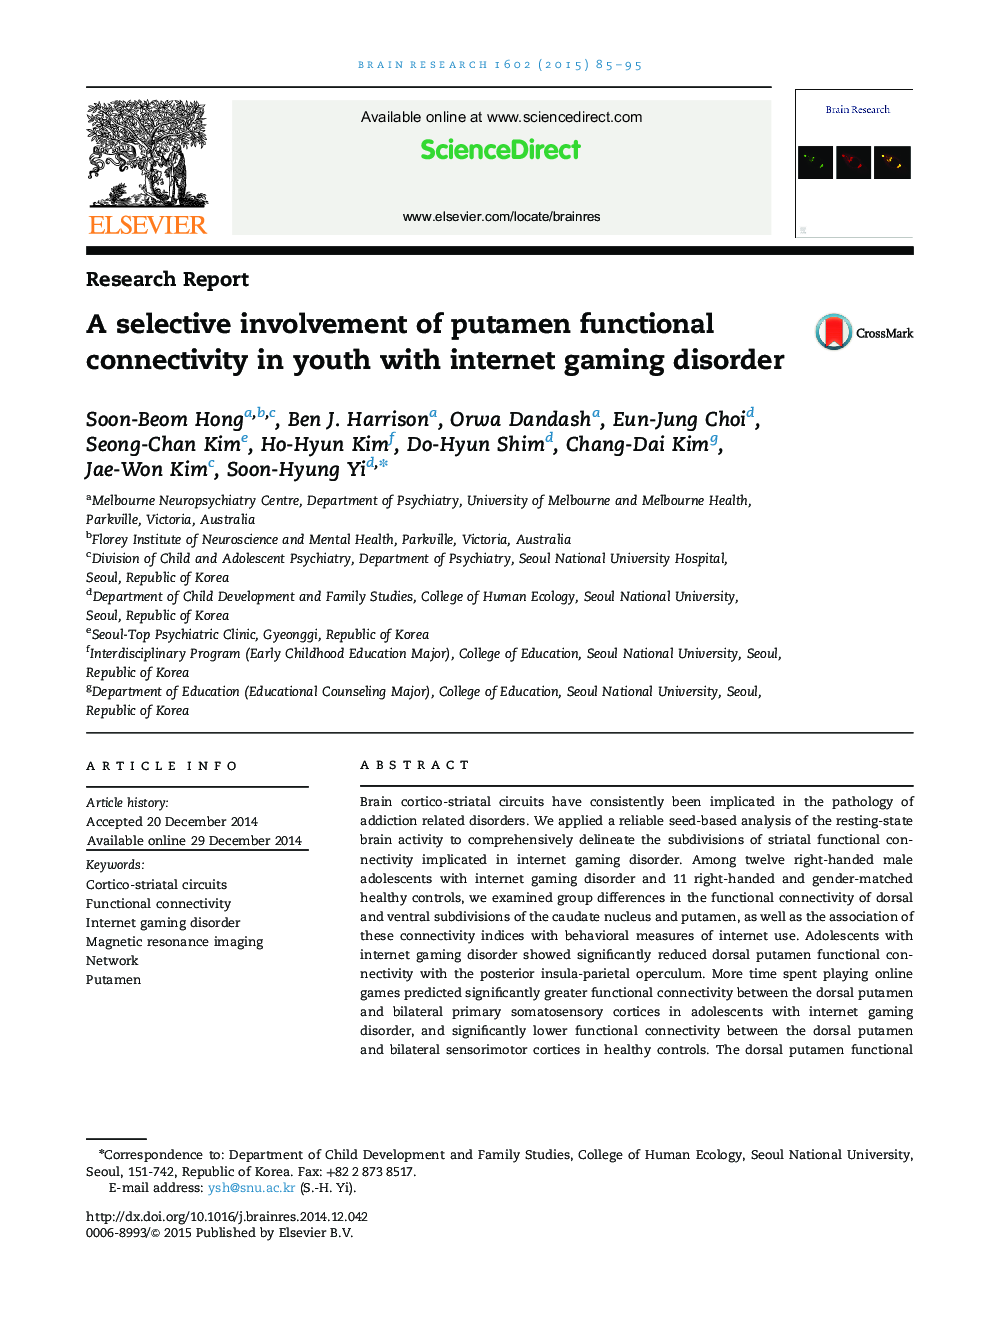 دخالت انتخابی اتصال پیوسته در جوانان با اختلال بازی در اینترنت 